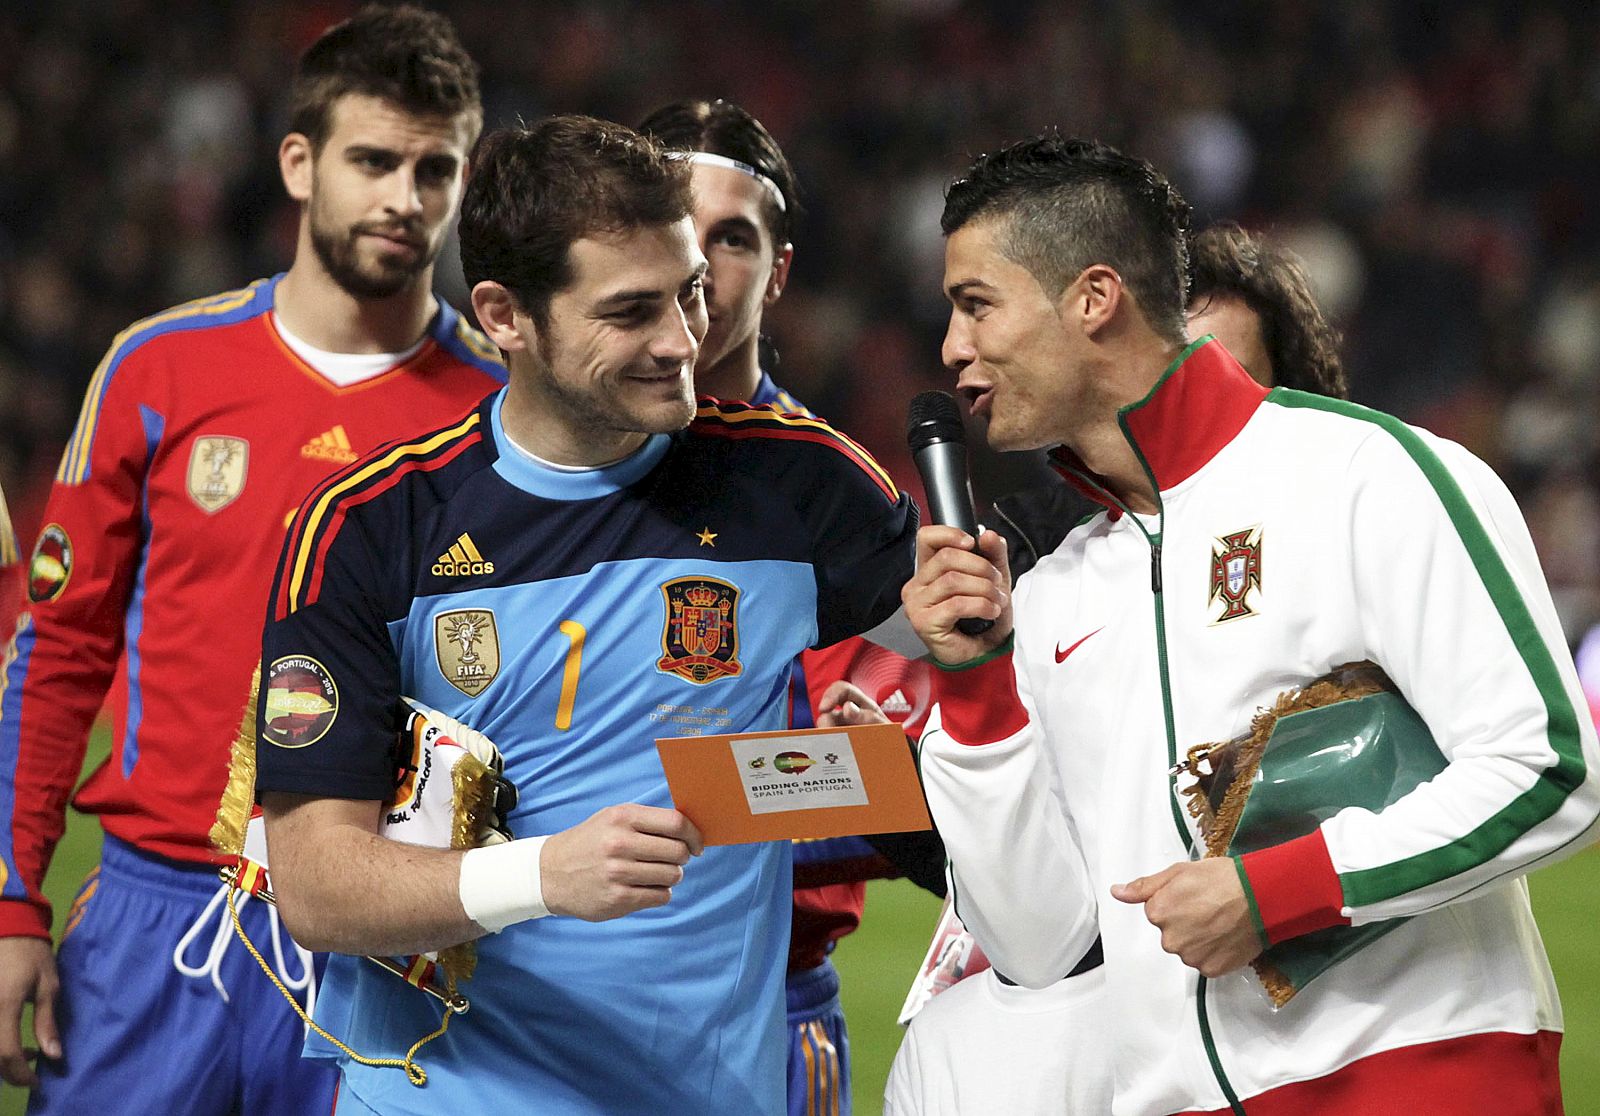 El guardameta de la selección española, Iker Casillas y el delantero de Portugal, Cristiano Ronaldo, apoyaron la candidatura ibérica en Lisboa.